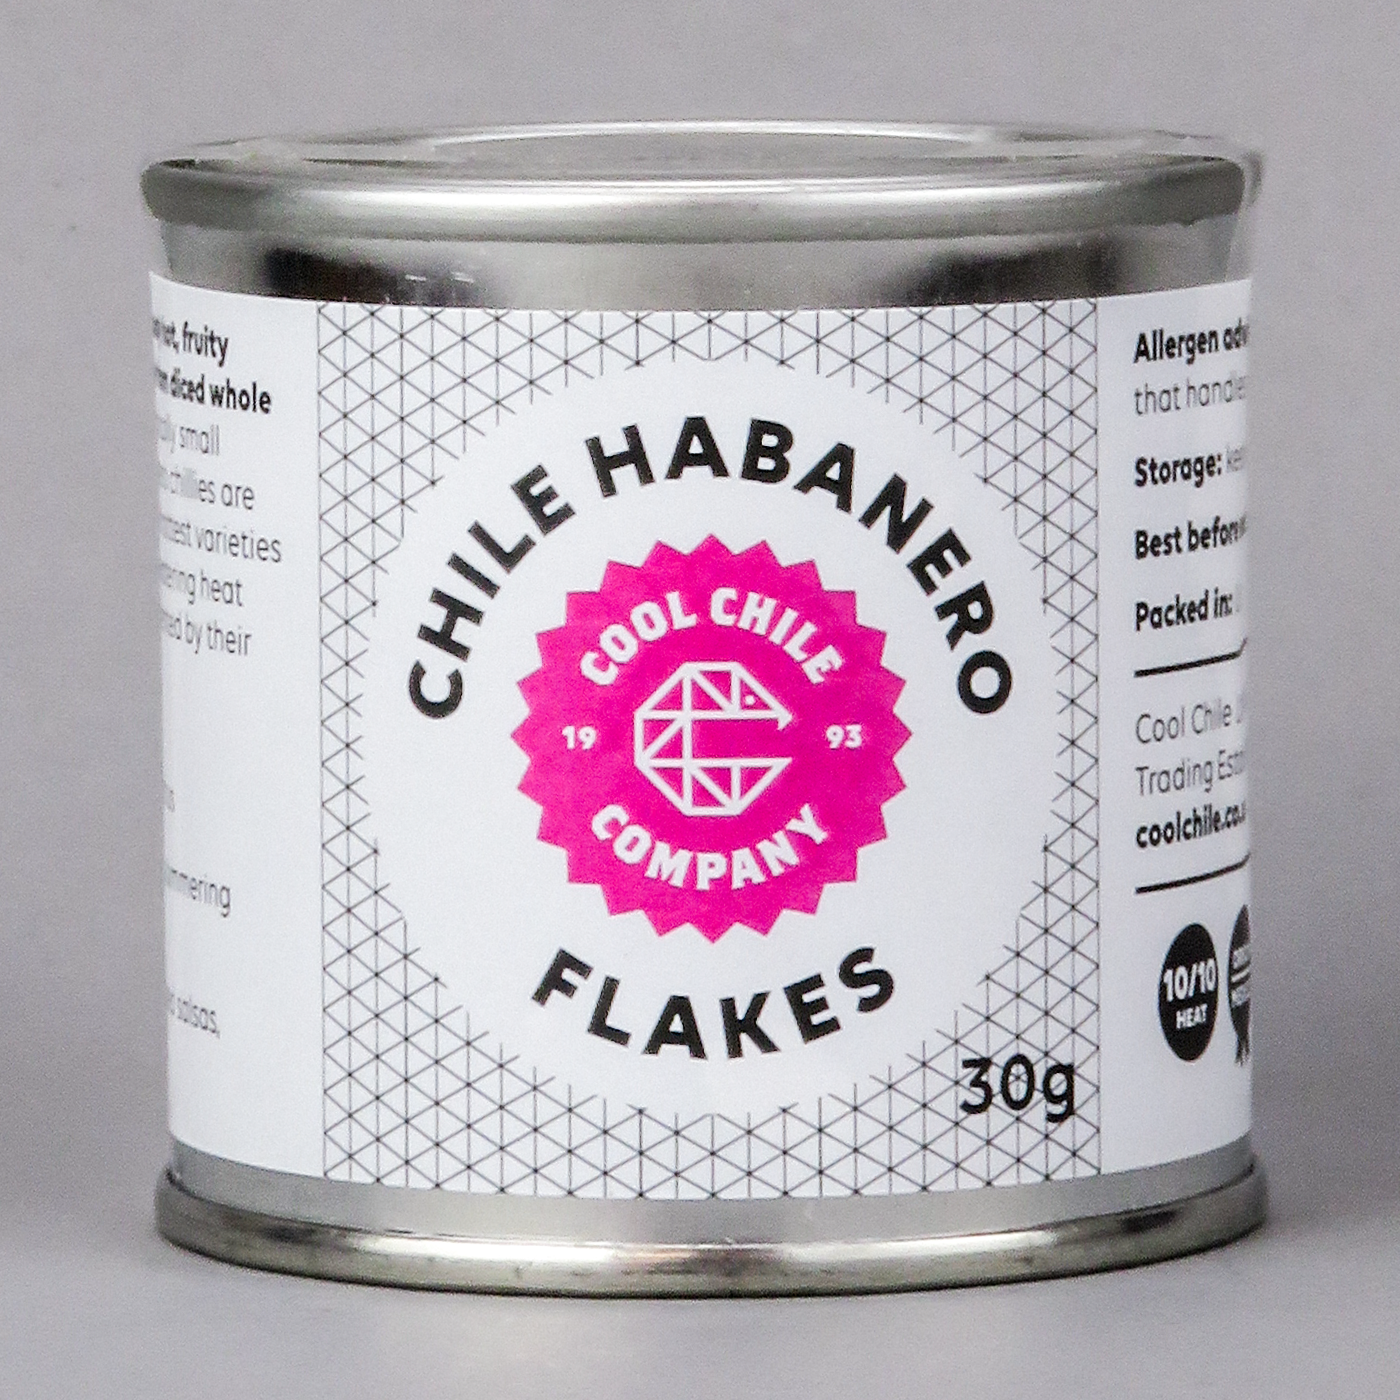 Habanero flakes - product image